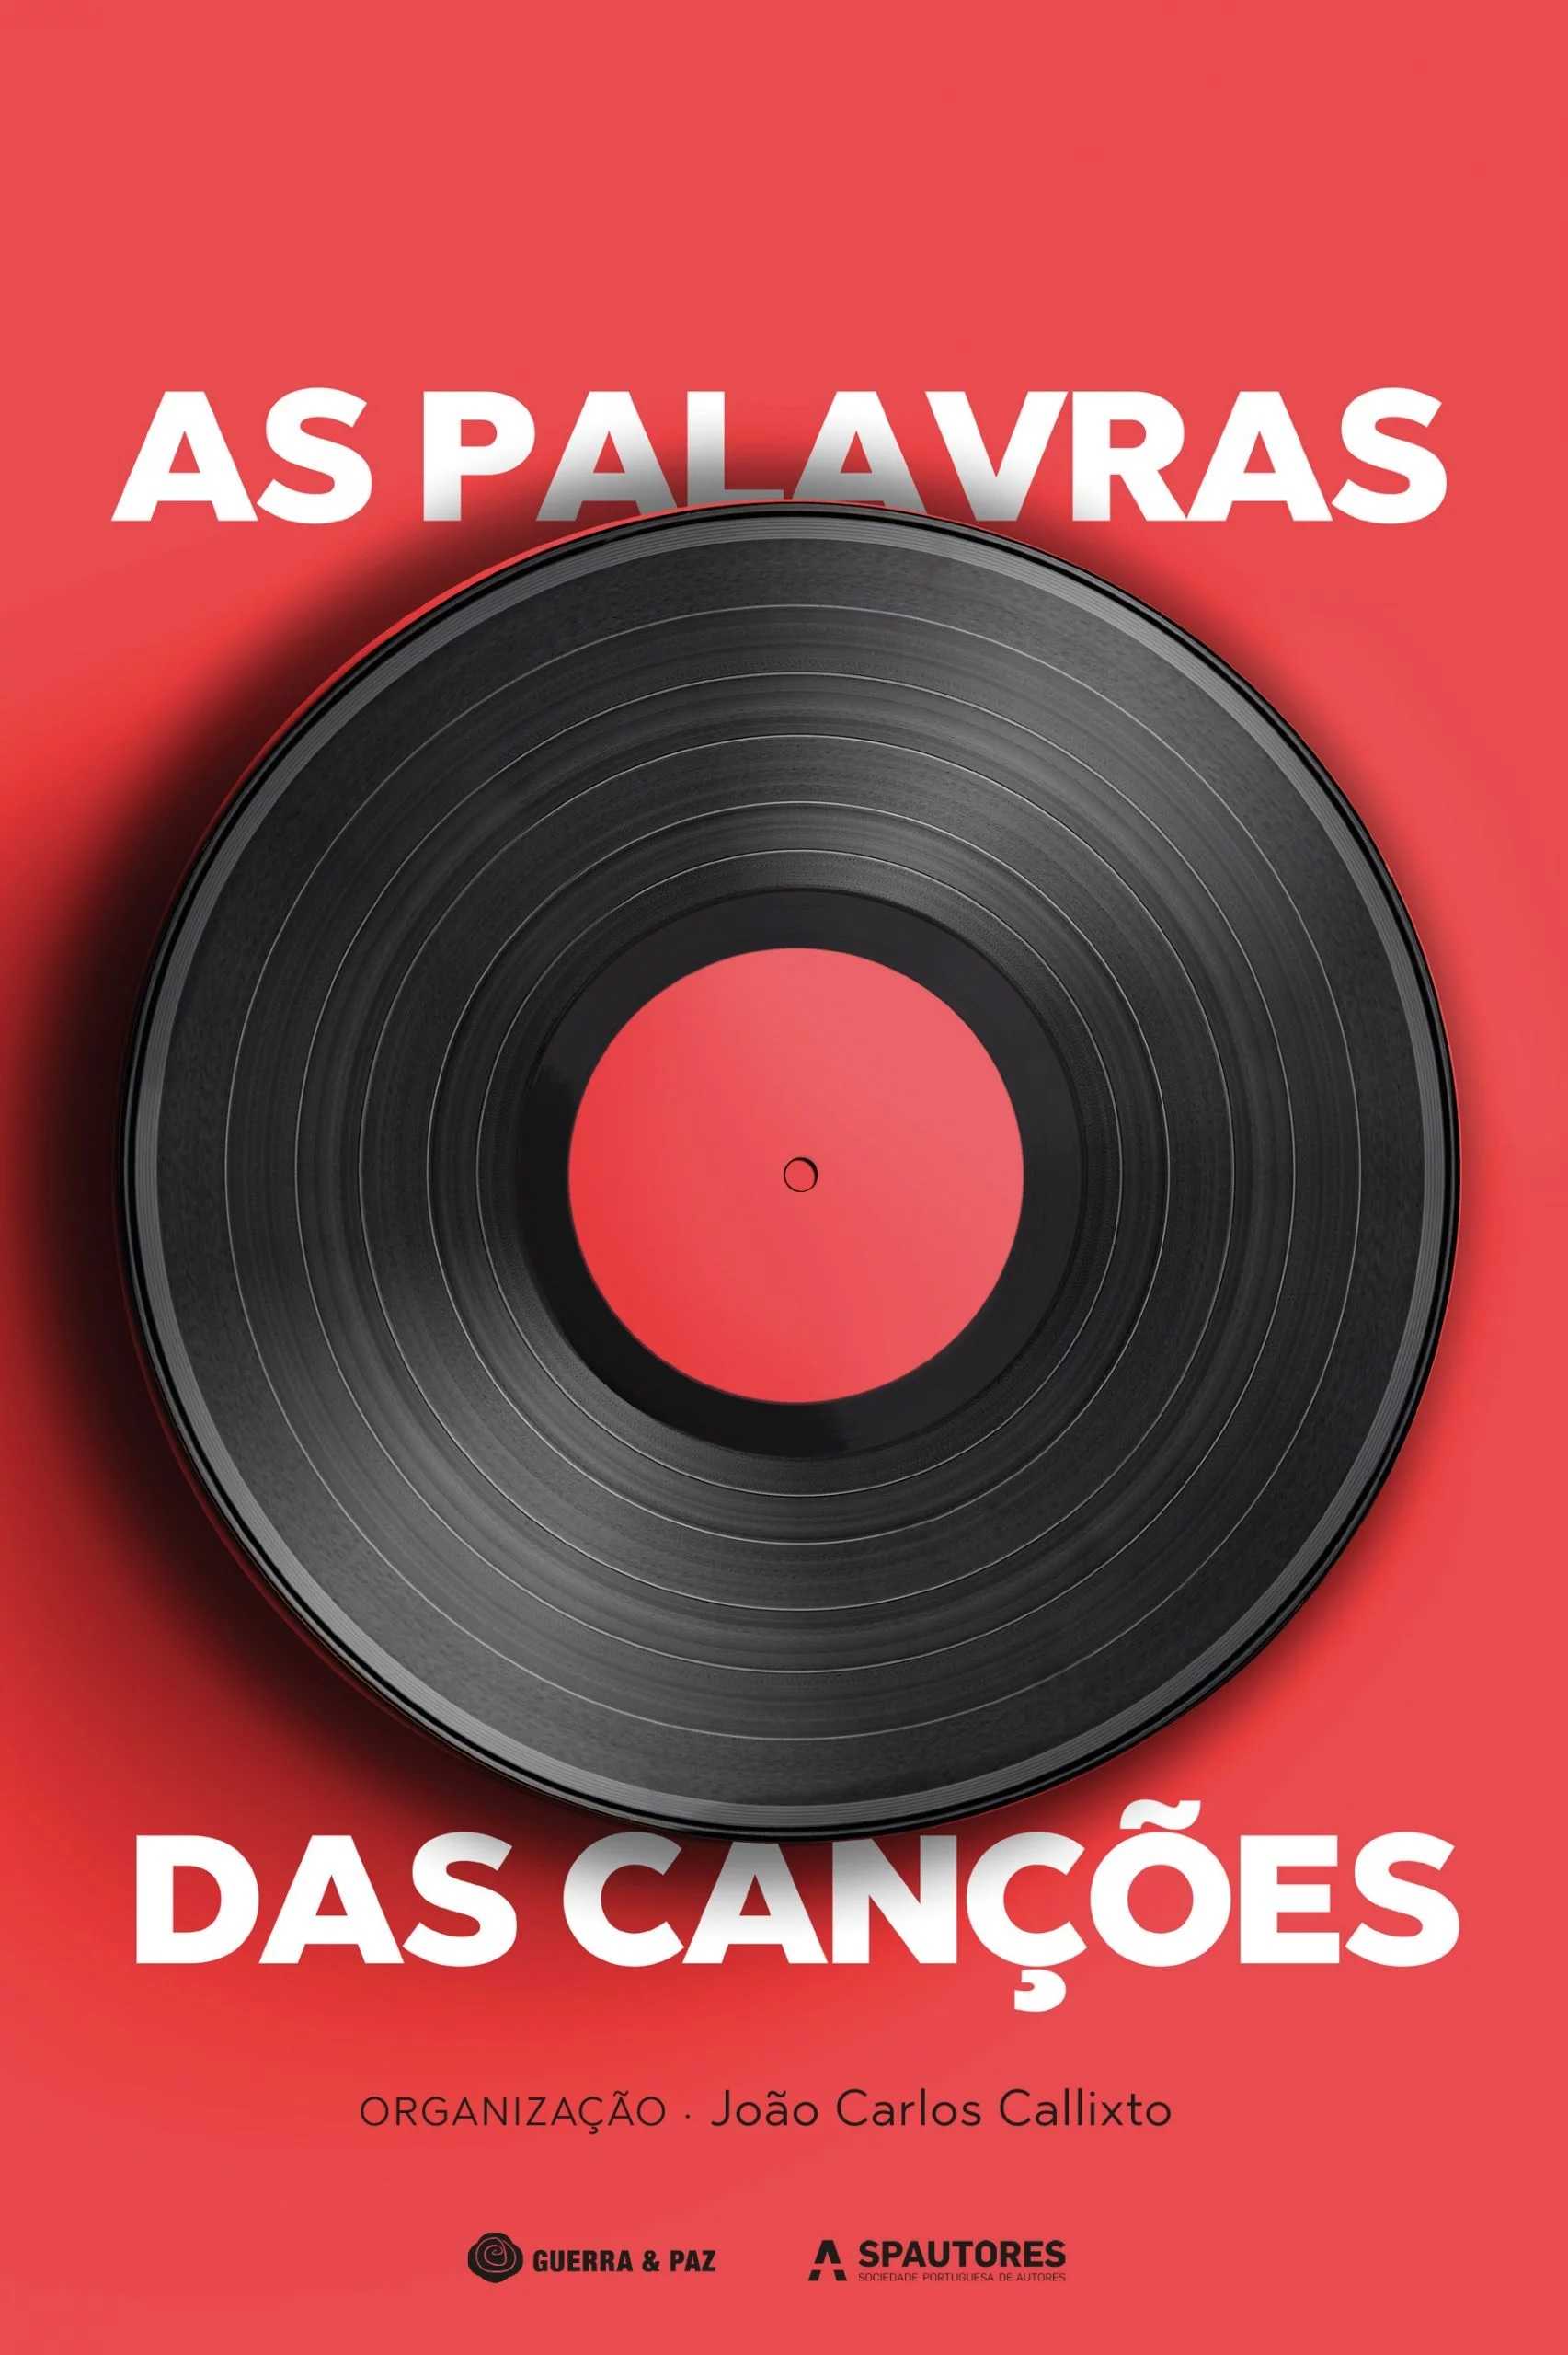 As letras das canções portuguesas